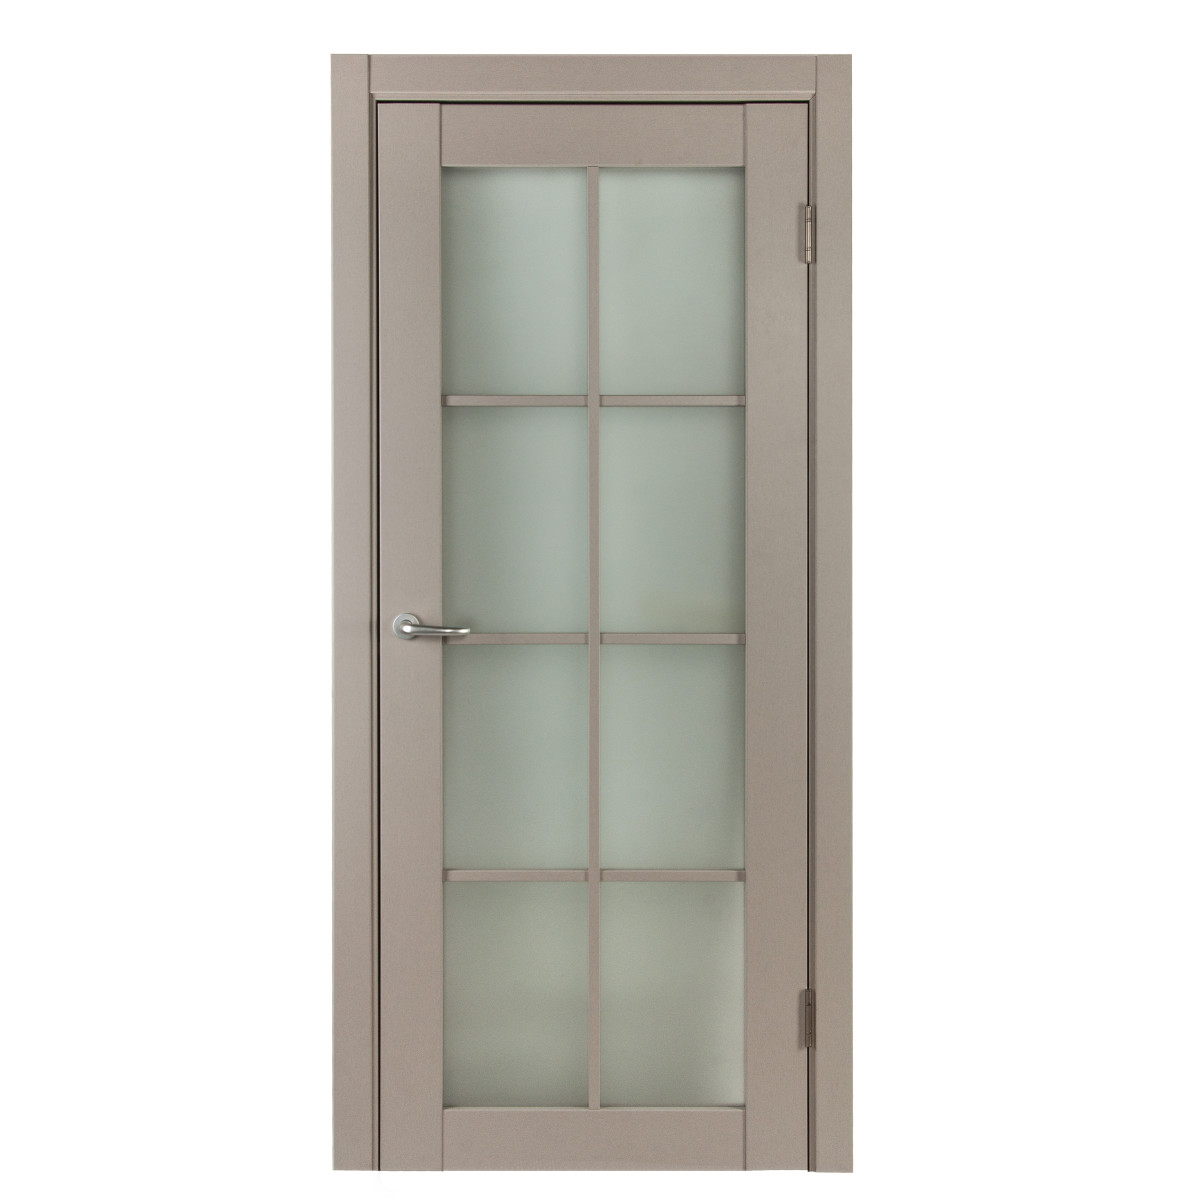 Дверь межкомнатная остеклённая с фурнитурой Пьемонт 60х200 см, Hardflex, цвет платина светлая